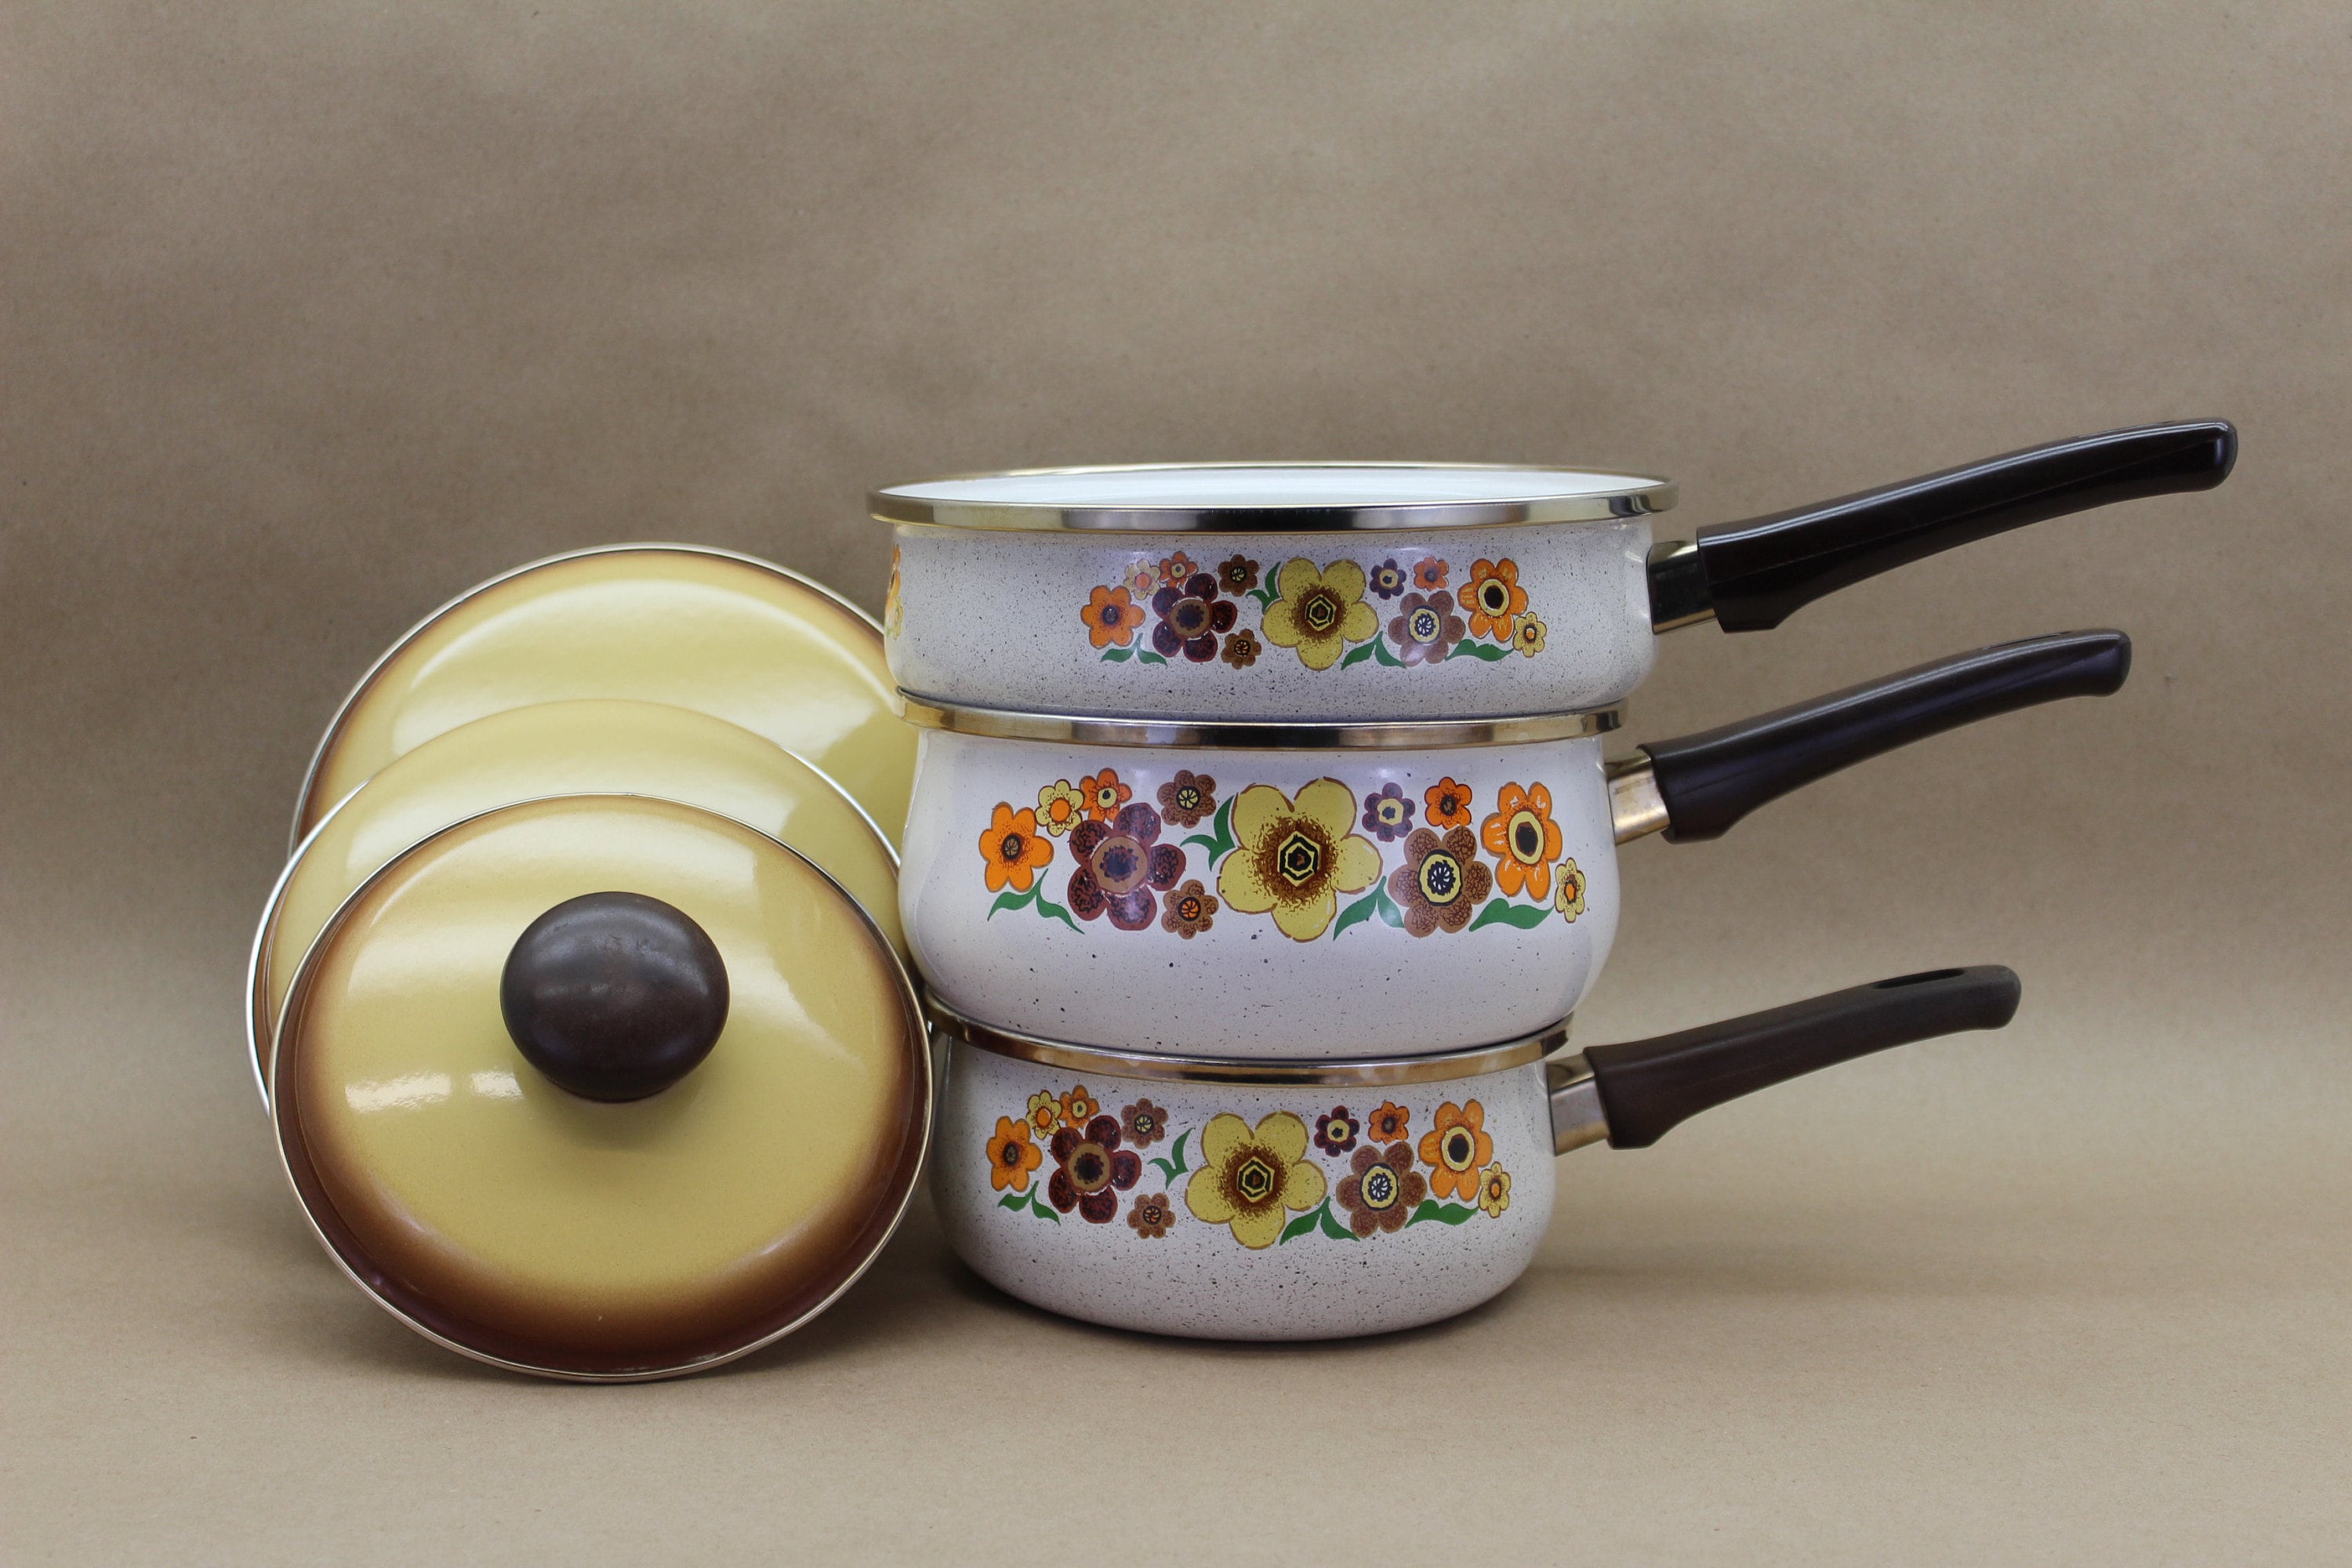 Vintage 70s Harvest Blossom Porcelain Enamel Cookware 6 PC Set Pot Pans